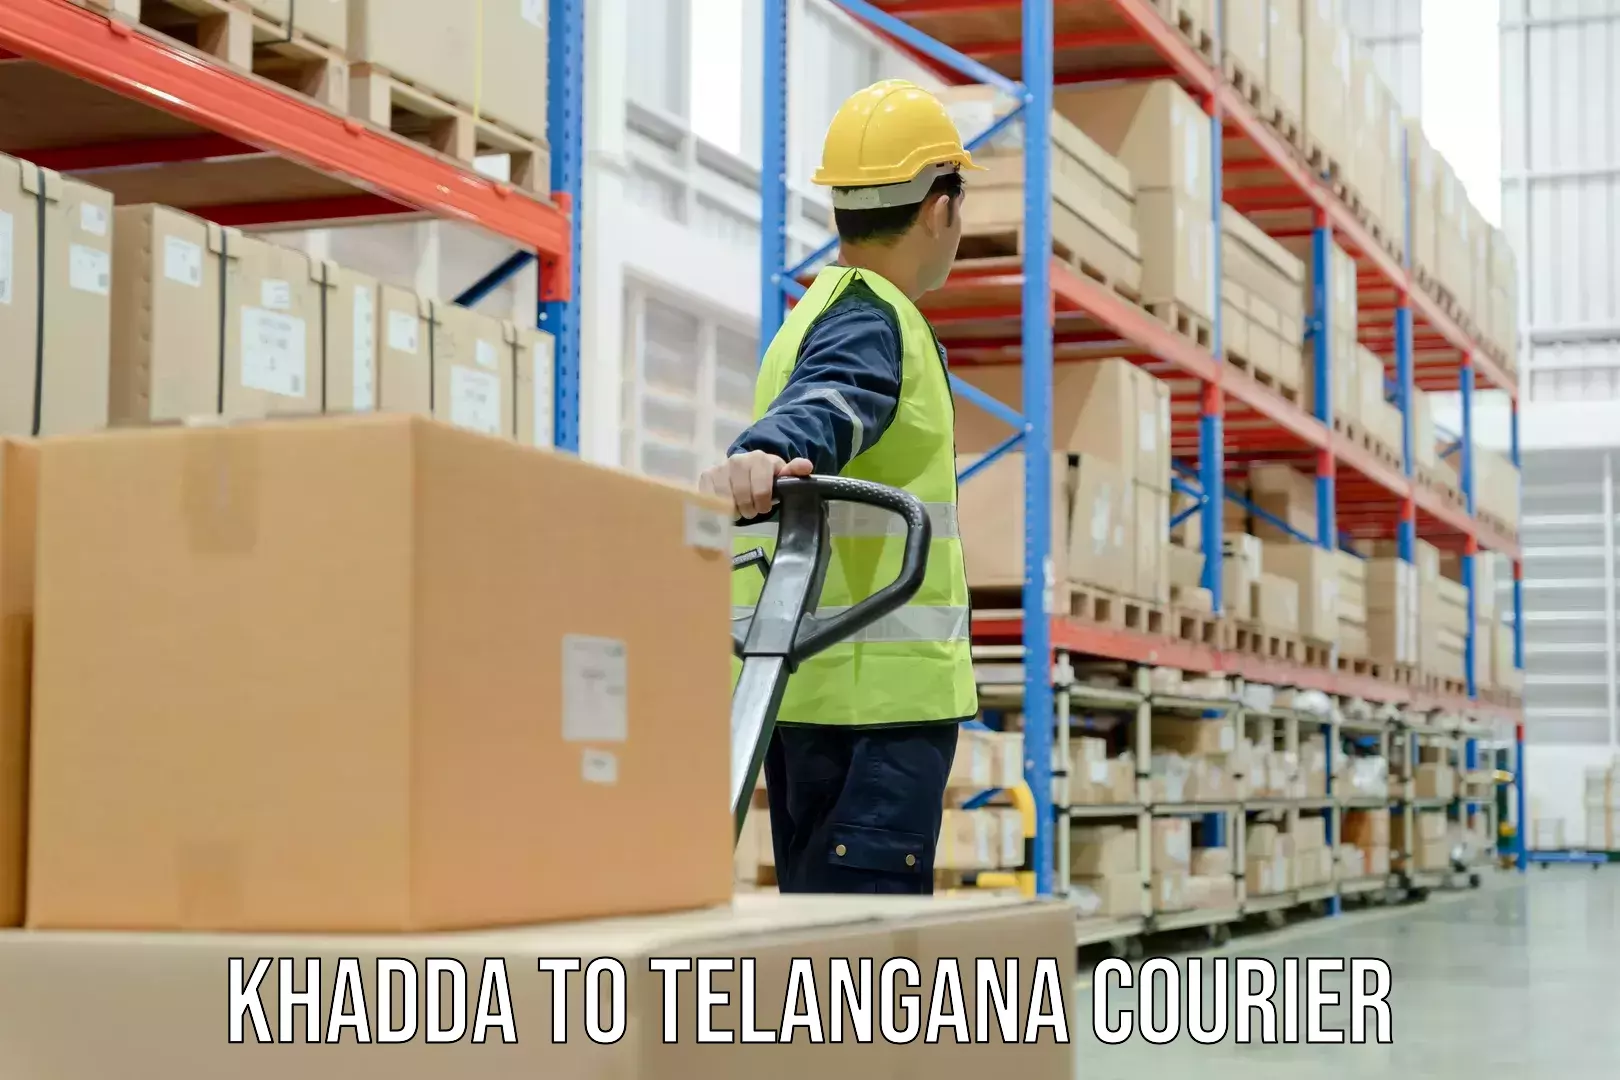 Digital courier platforms Khadda to Telangana